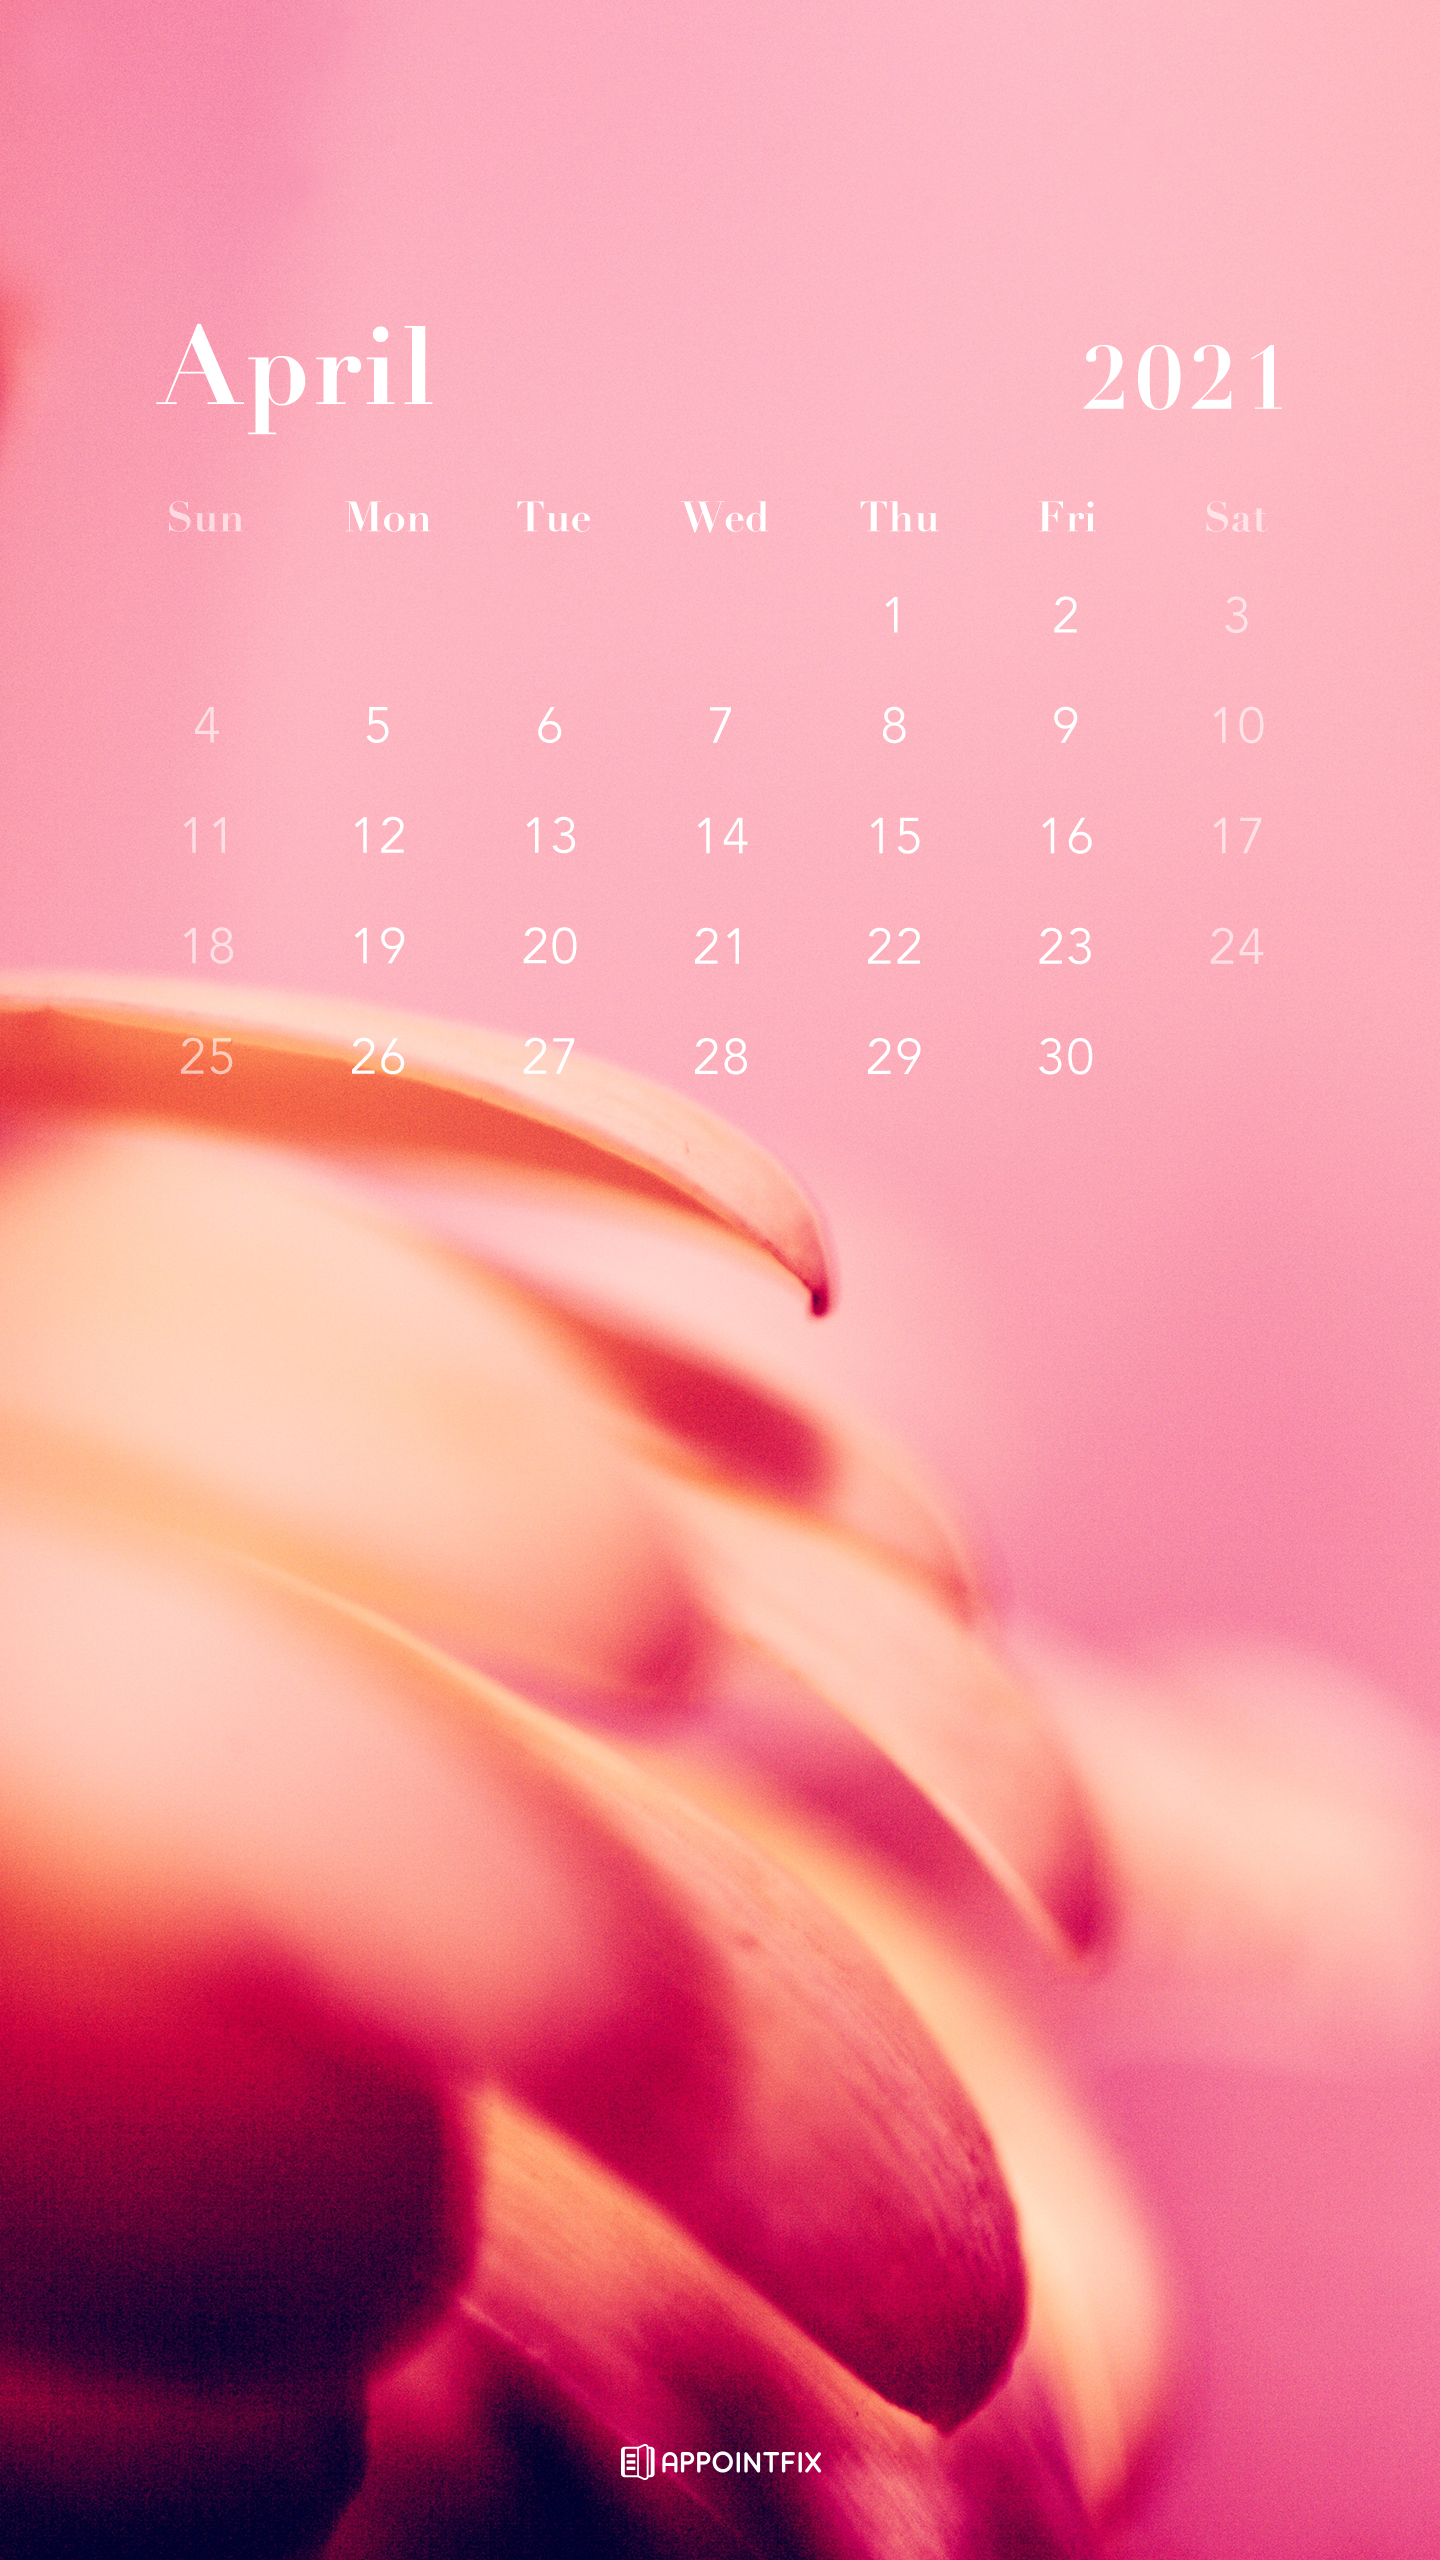 Free April 2021 Calendar Wallpapers – Desktop & Mobile